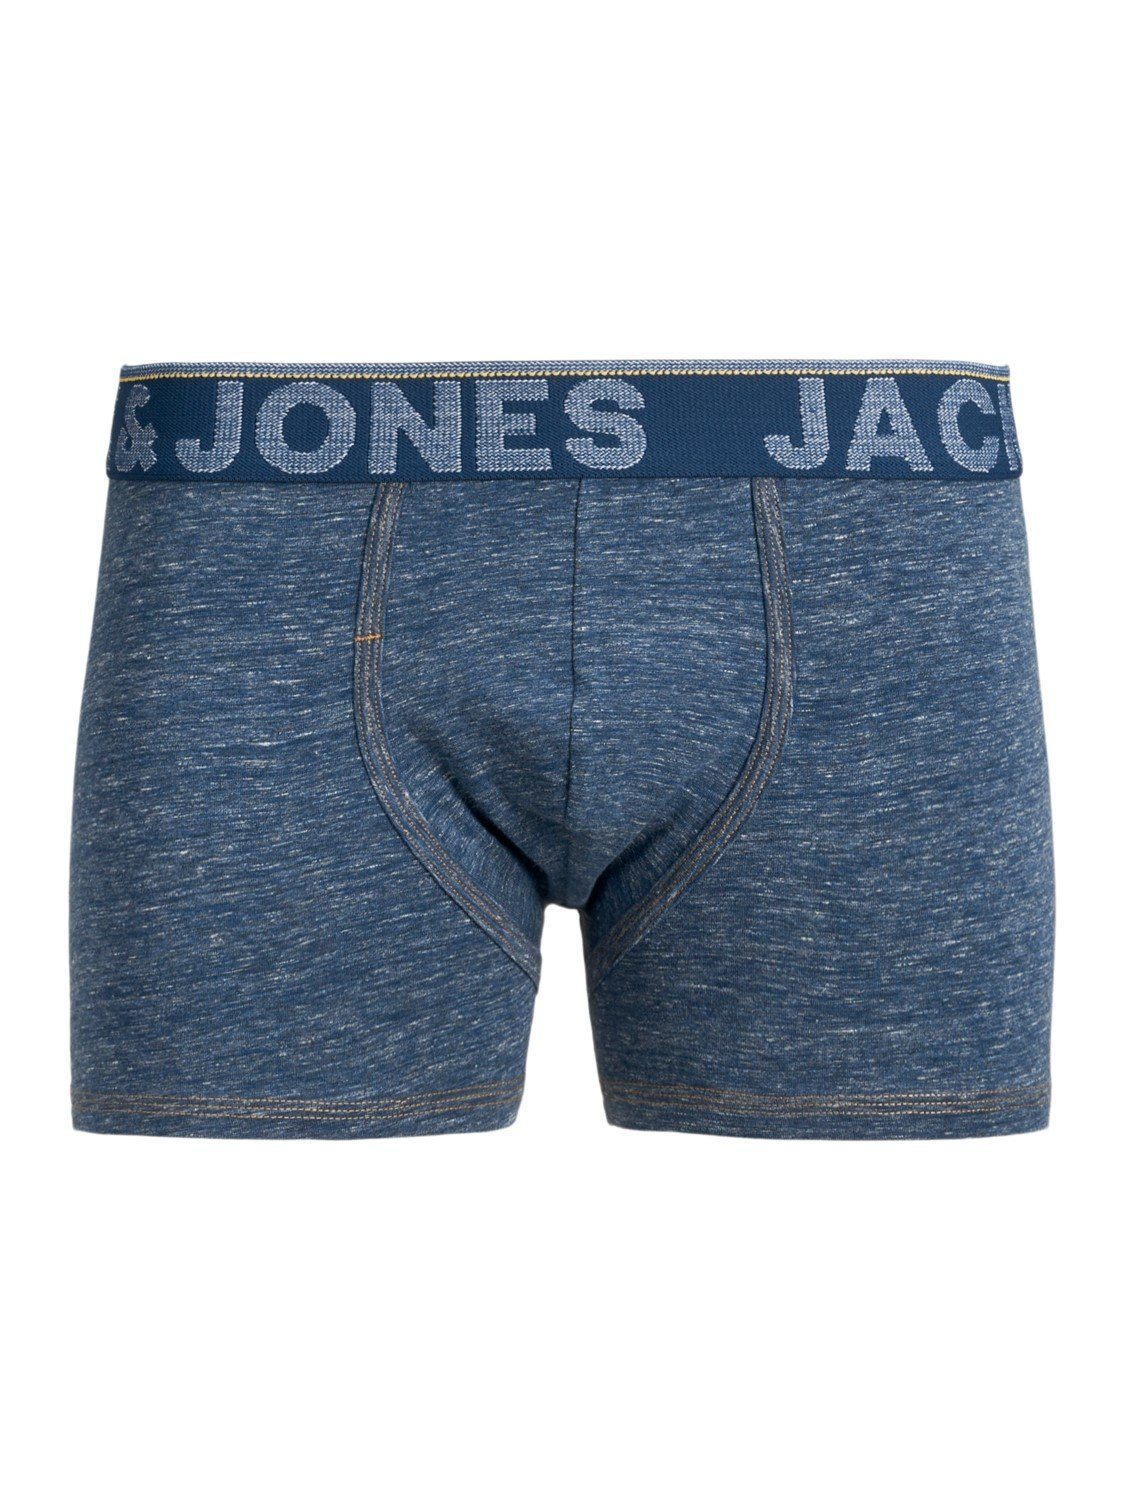 Jones JACDENIM Junior JNR 3 Jack TRUNKS & PACK Slip